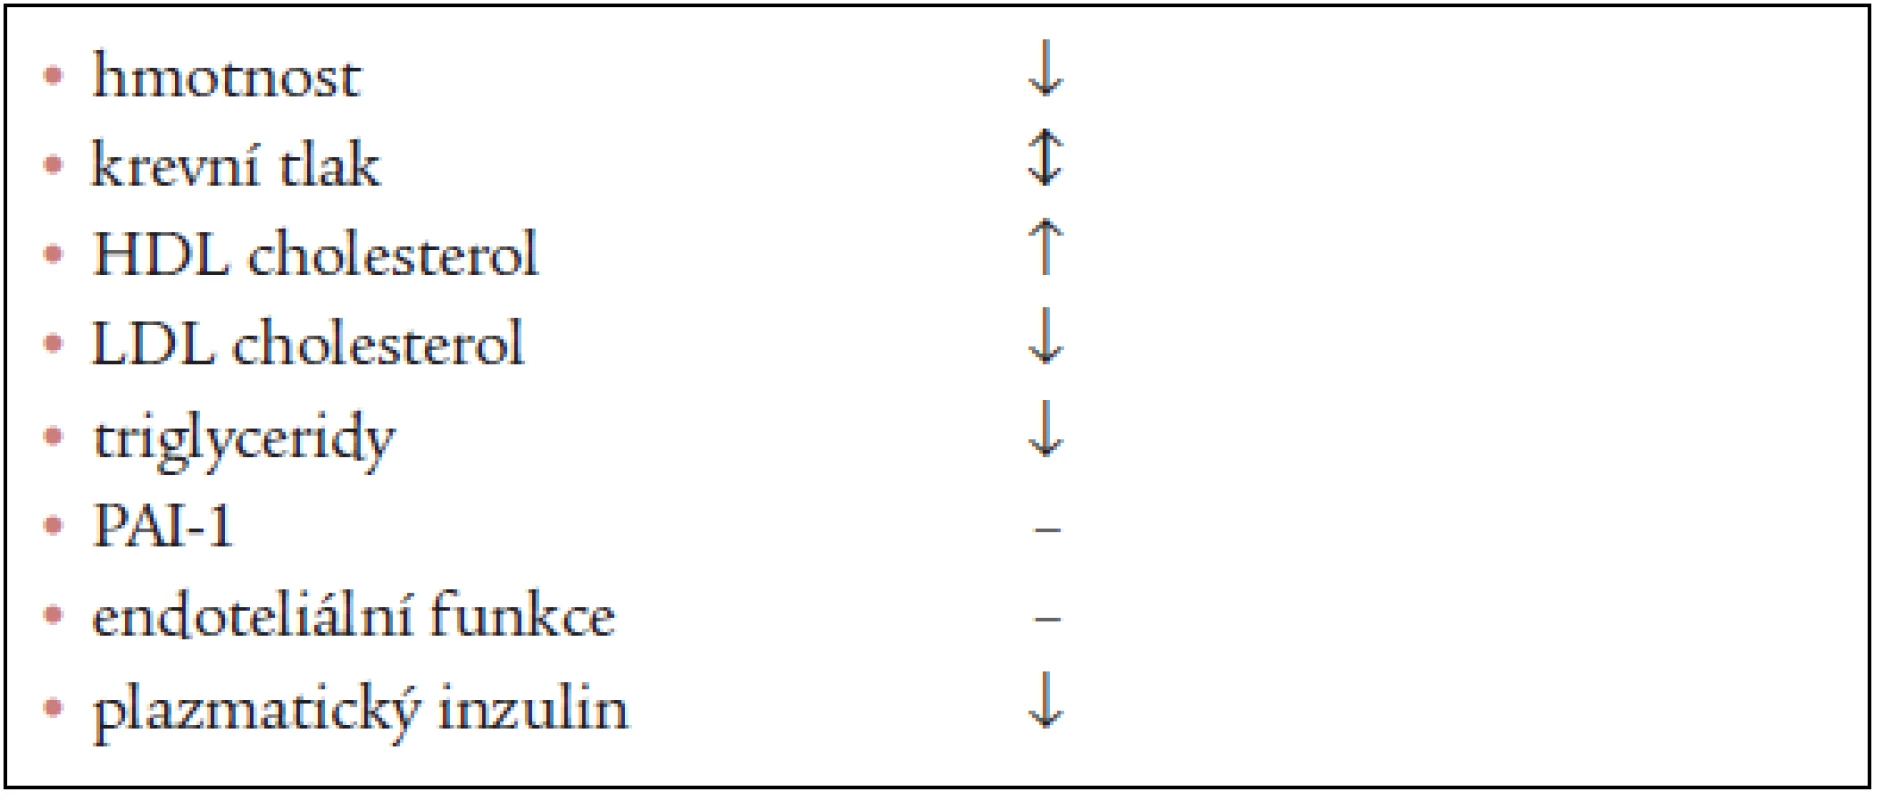 Účinky sibutraminu na kardiovaskulární rizikové faktory a markery syndromu inzulinové rezistence (upraveno dle Goldsteina).